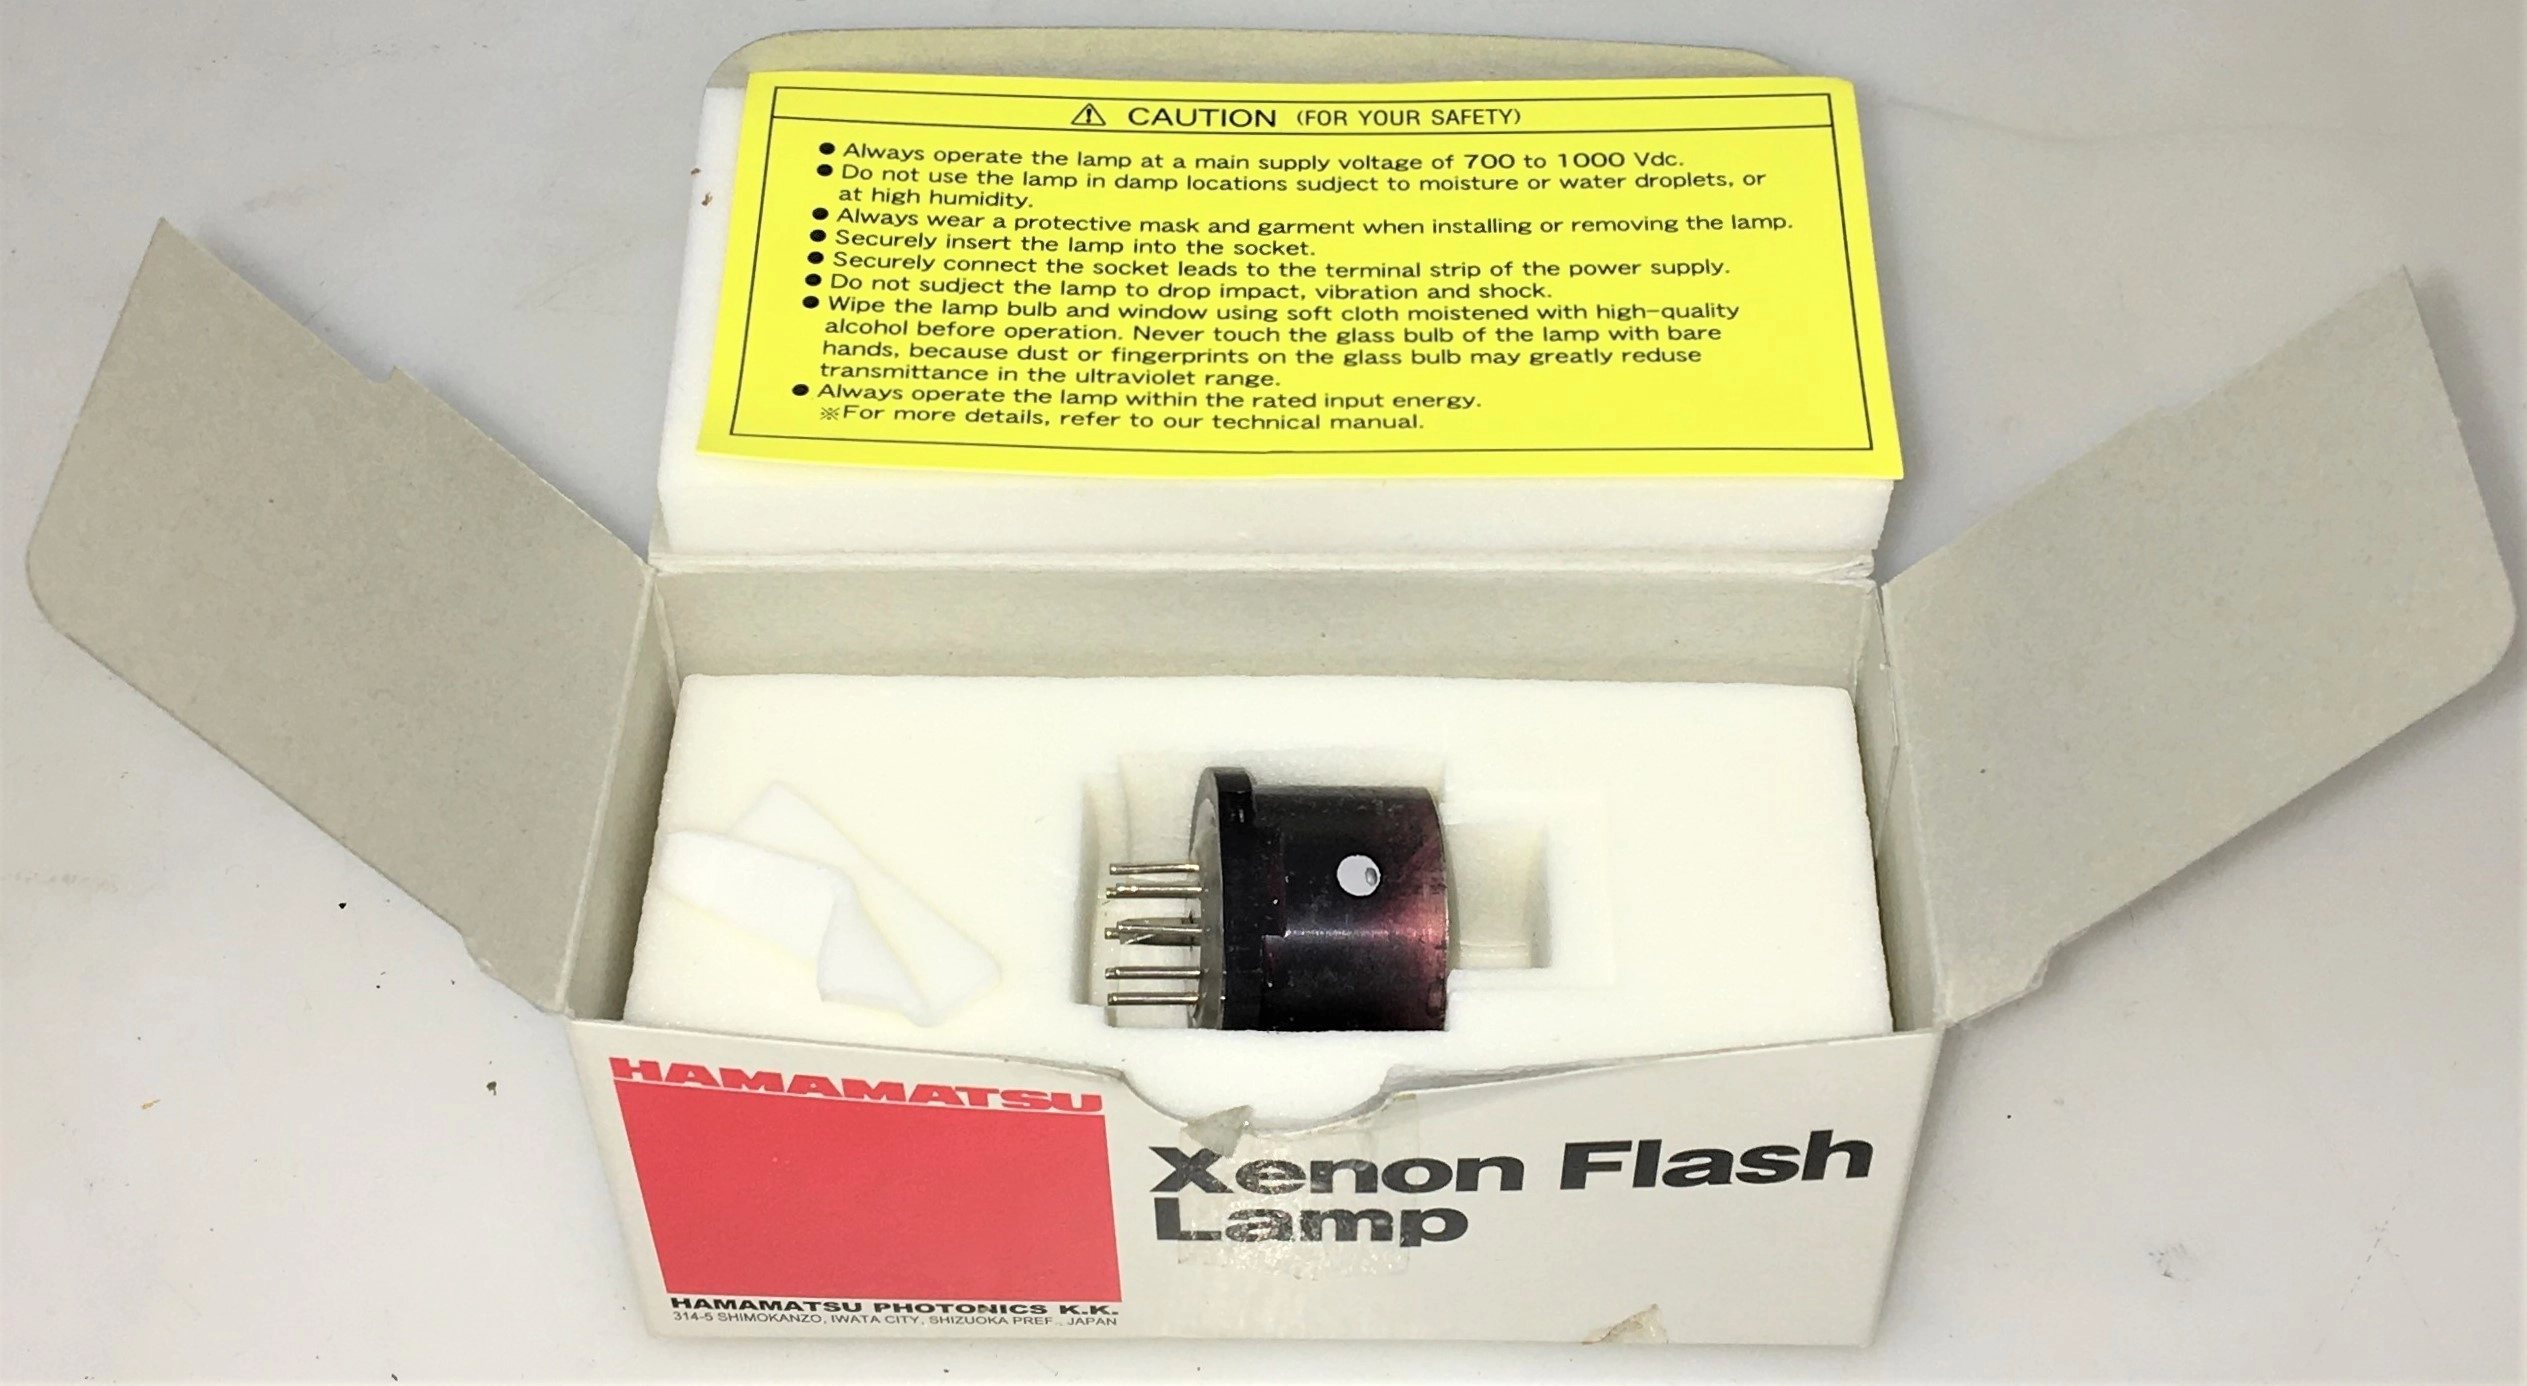 Hamamatsu L4640 Xenon Flash Lamp